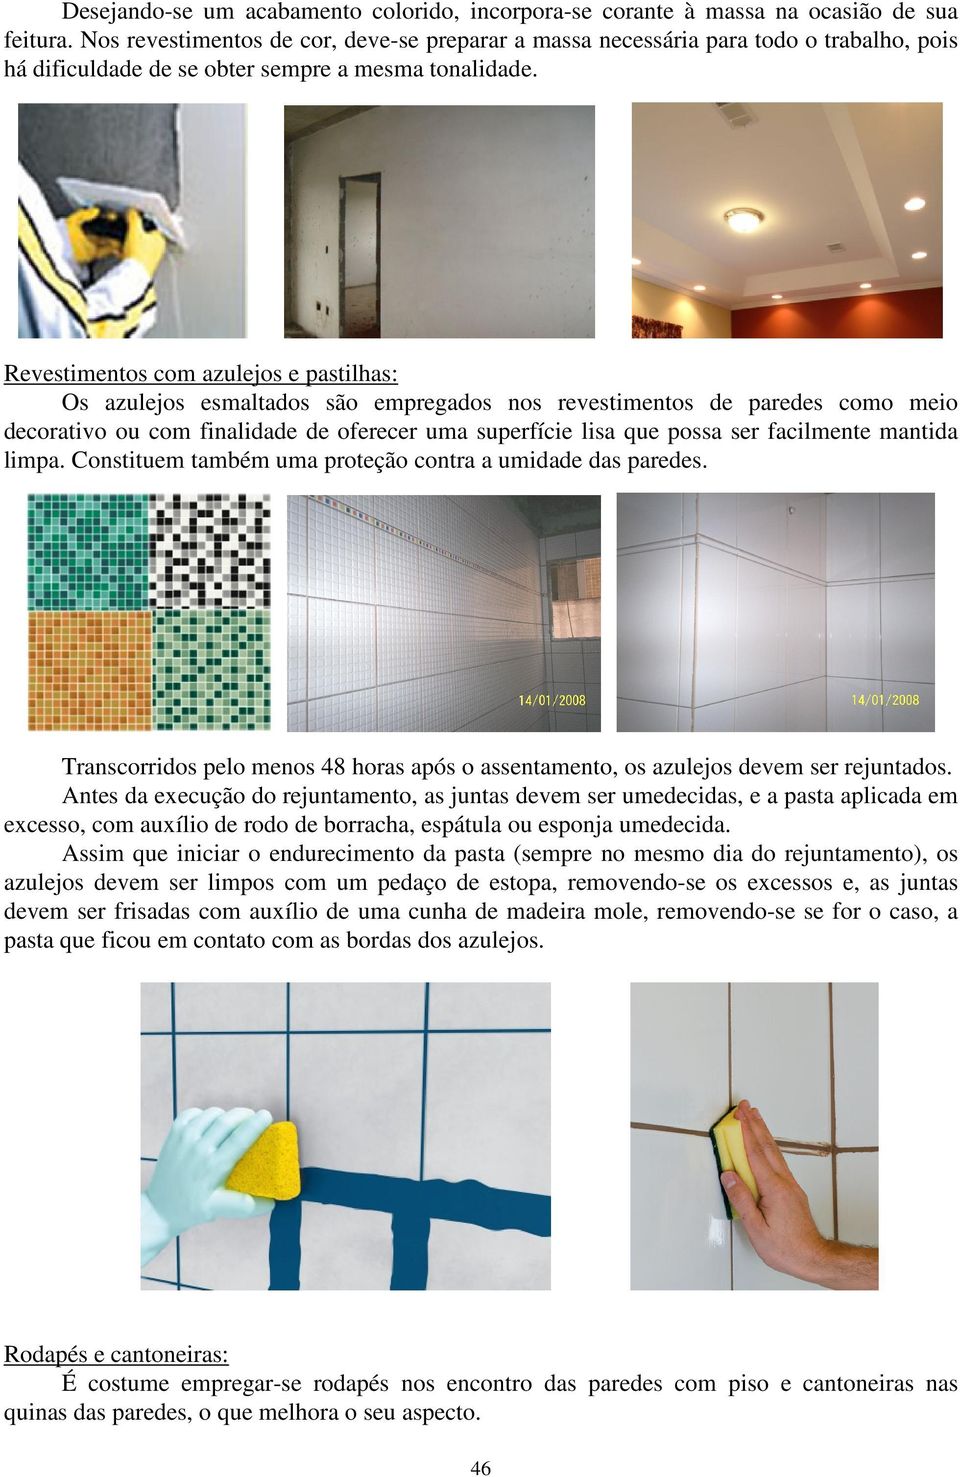 Revestimentos com azulejos e pastilhas: Os azulejos esmaltados são empregados nos revestimentos de paredes como meio decorativo ou com finalidade de oferecer uma superfície lisa que possa ser